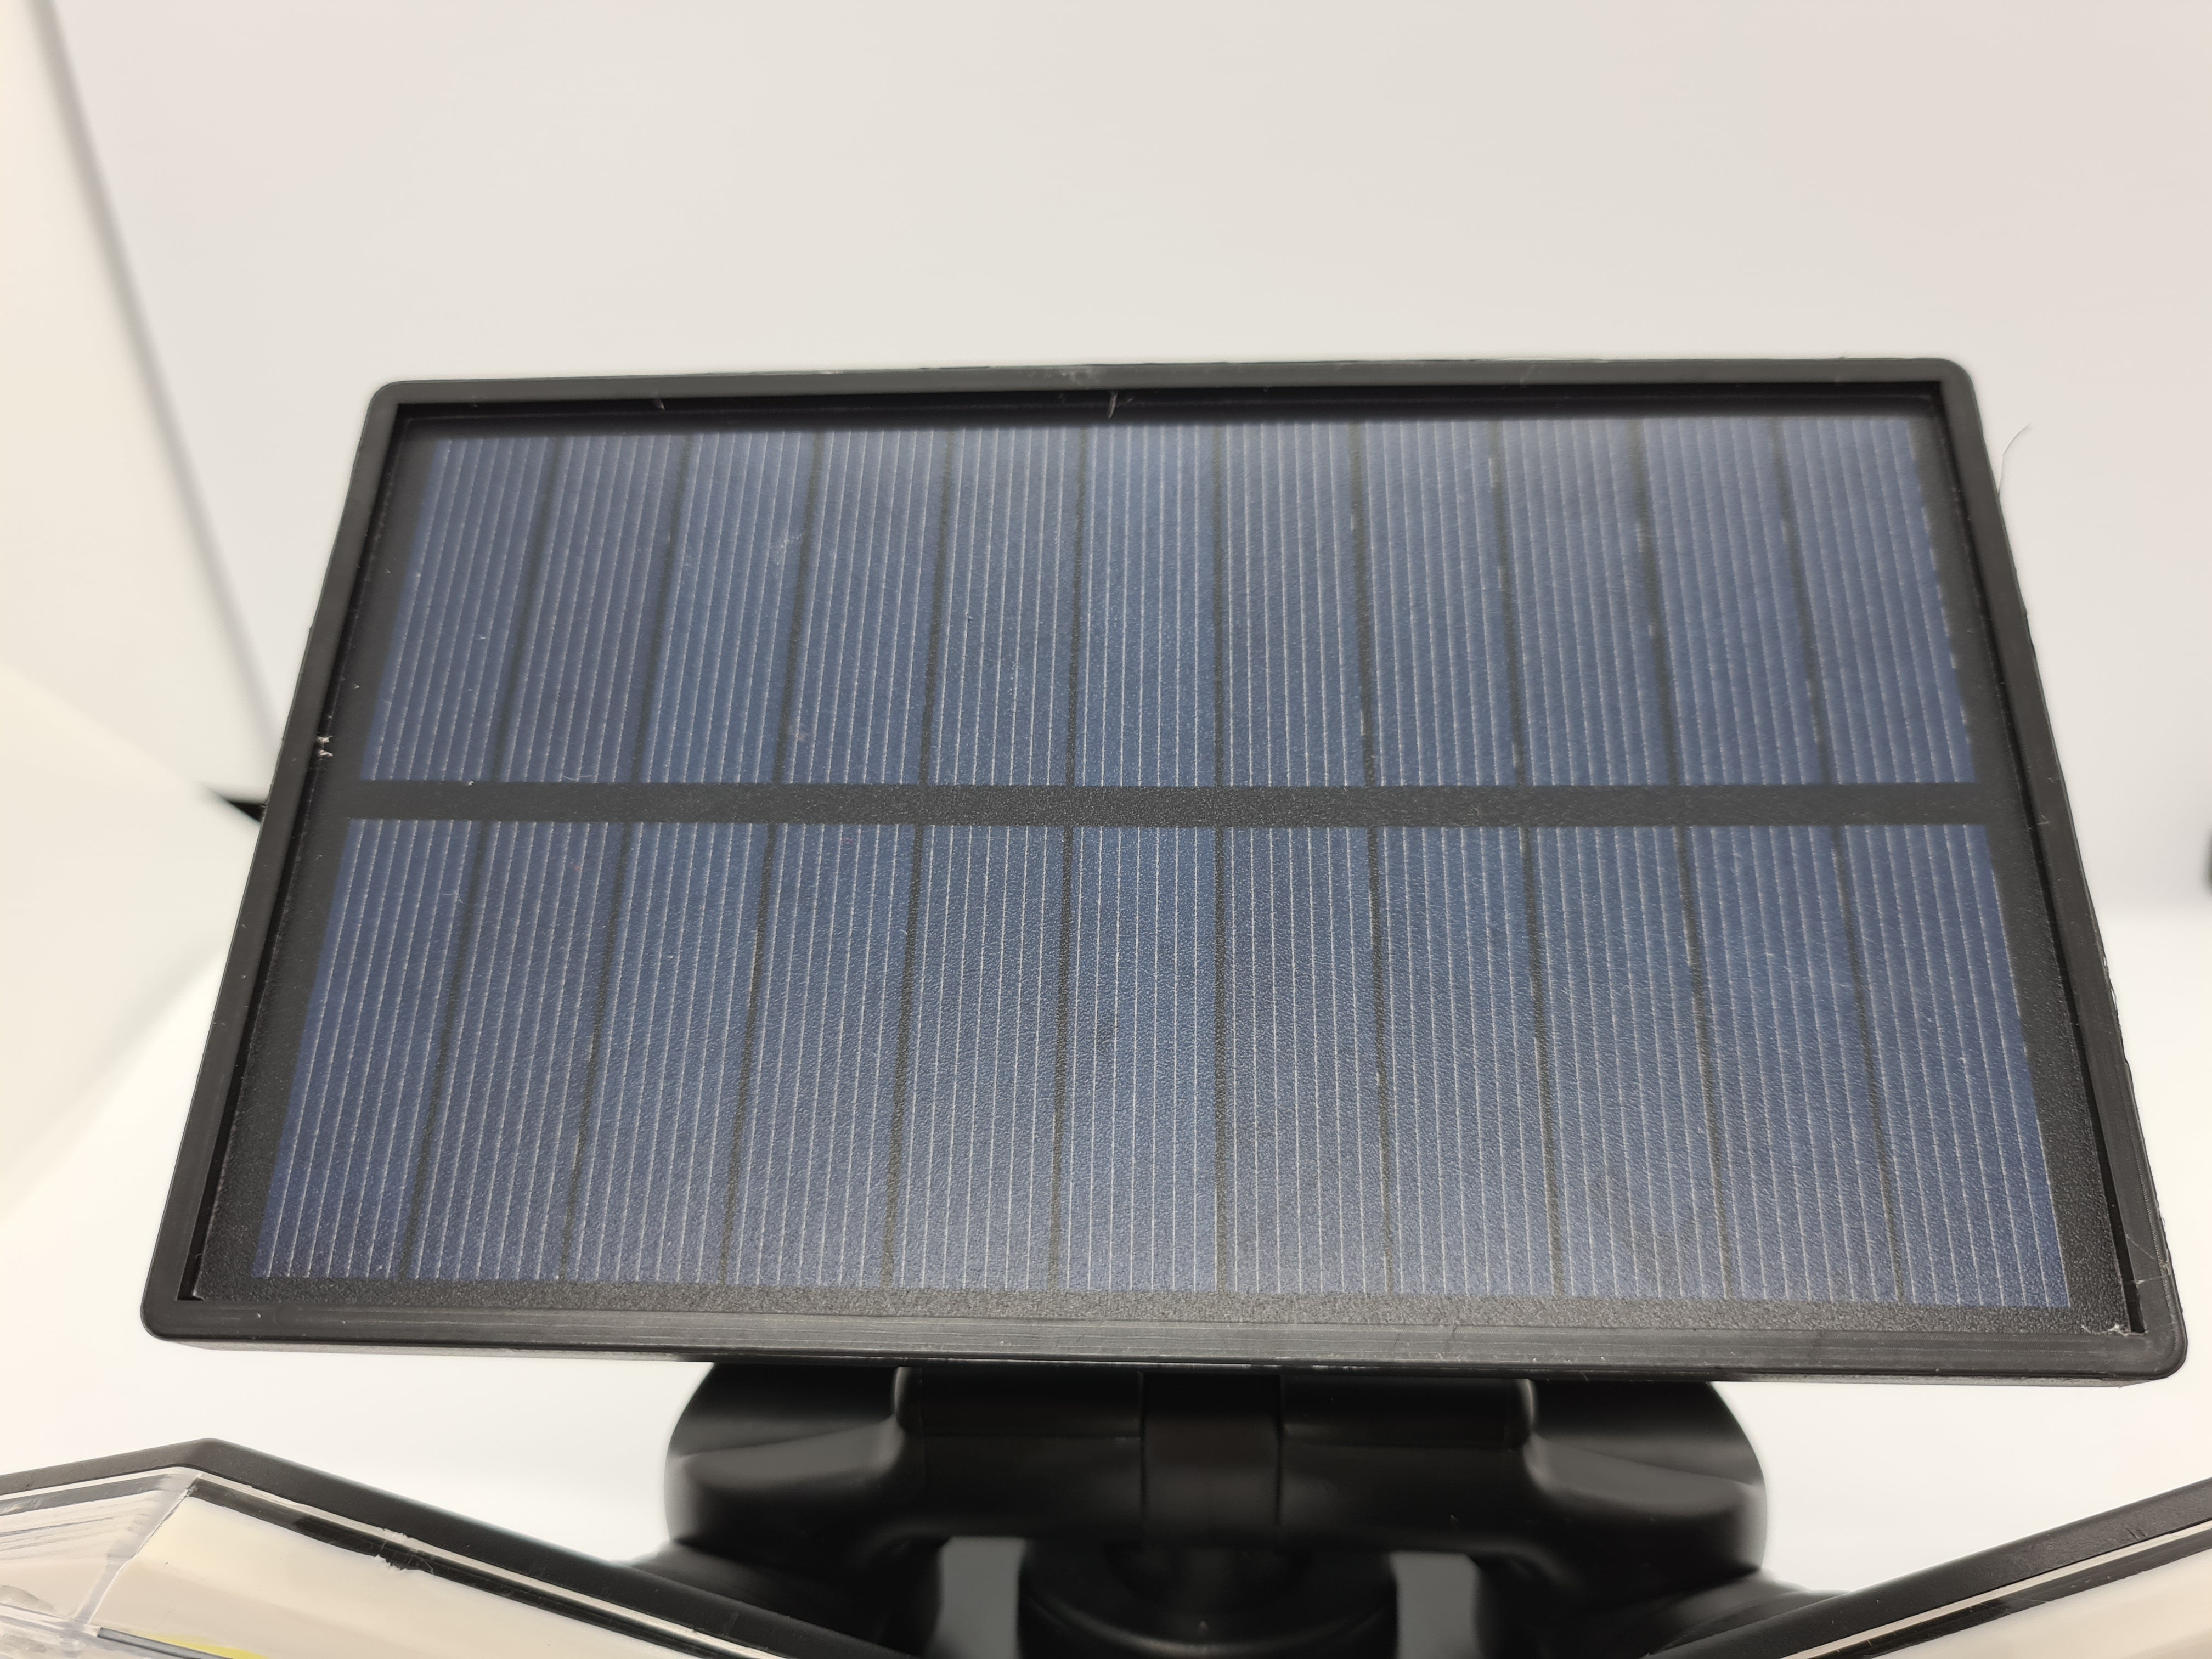 Lampa cu incarcare Solara 150W Leduri COB Senzor de Miscare Generatie Noua FLY03